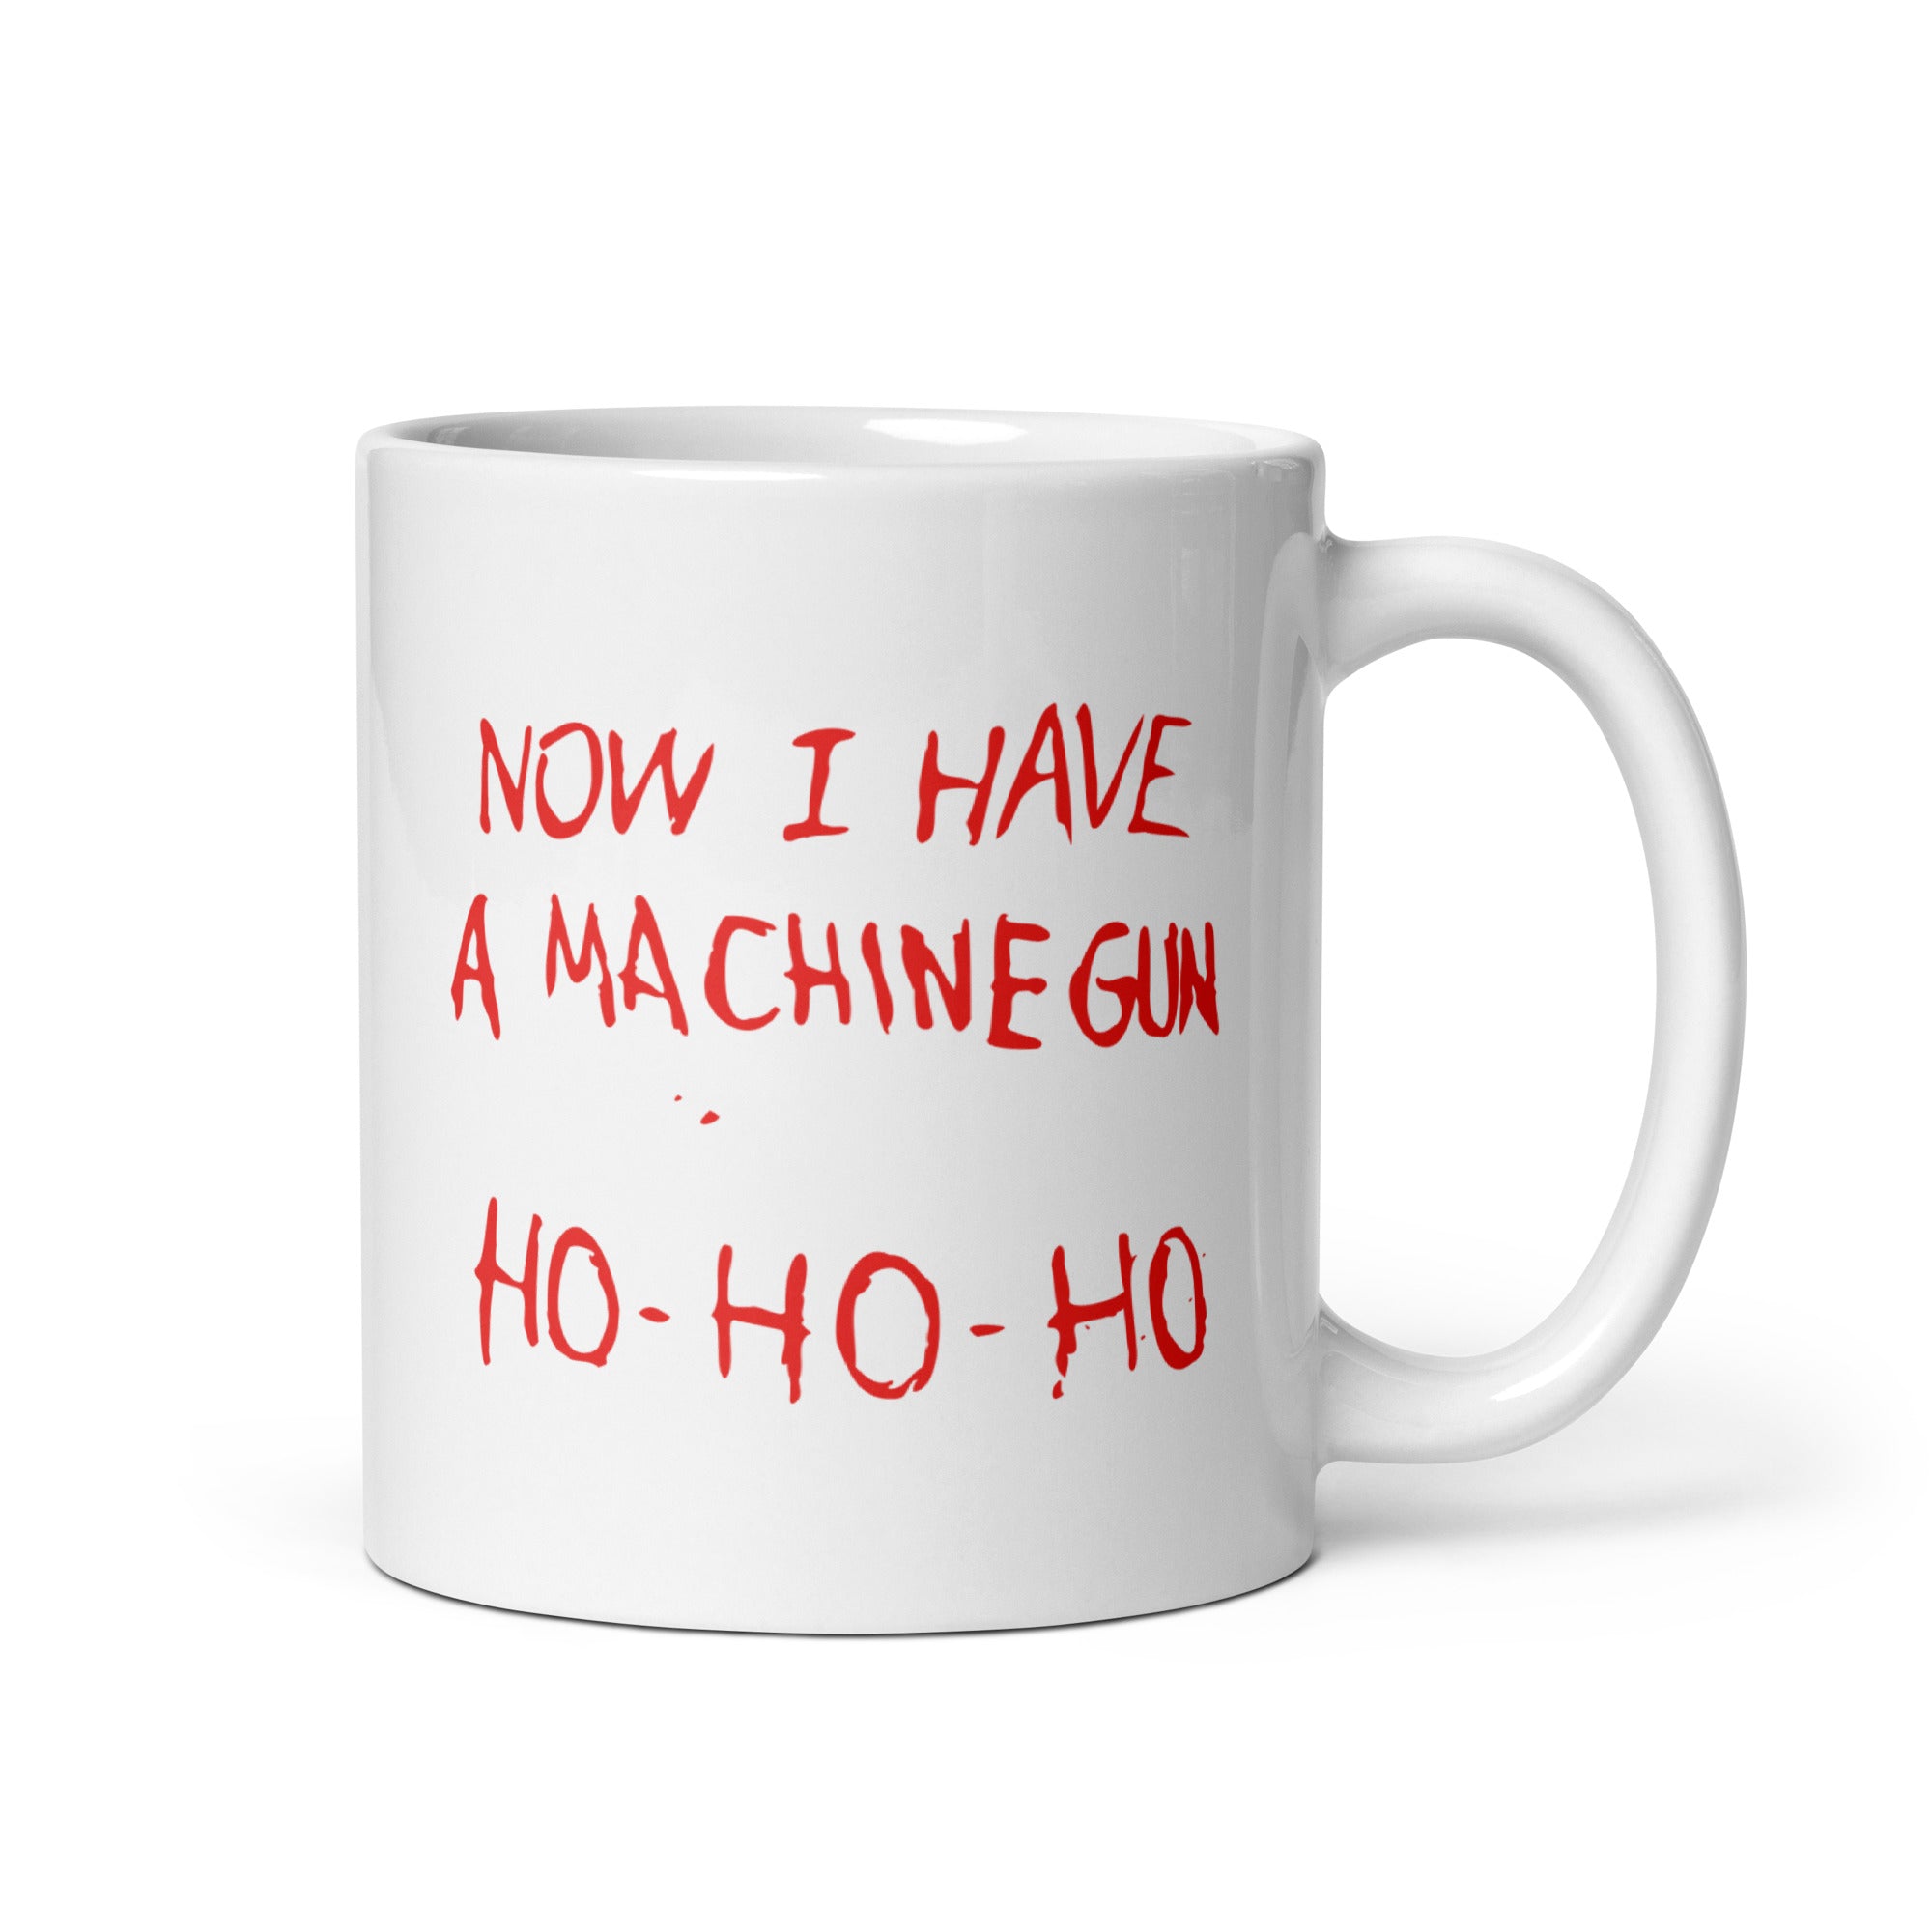 Now I Have a Machine Gun Ho-Ho-Ho - 11oz Coffee Mug